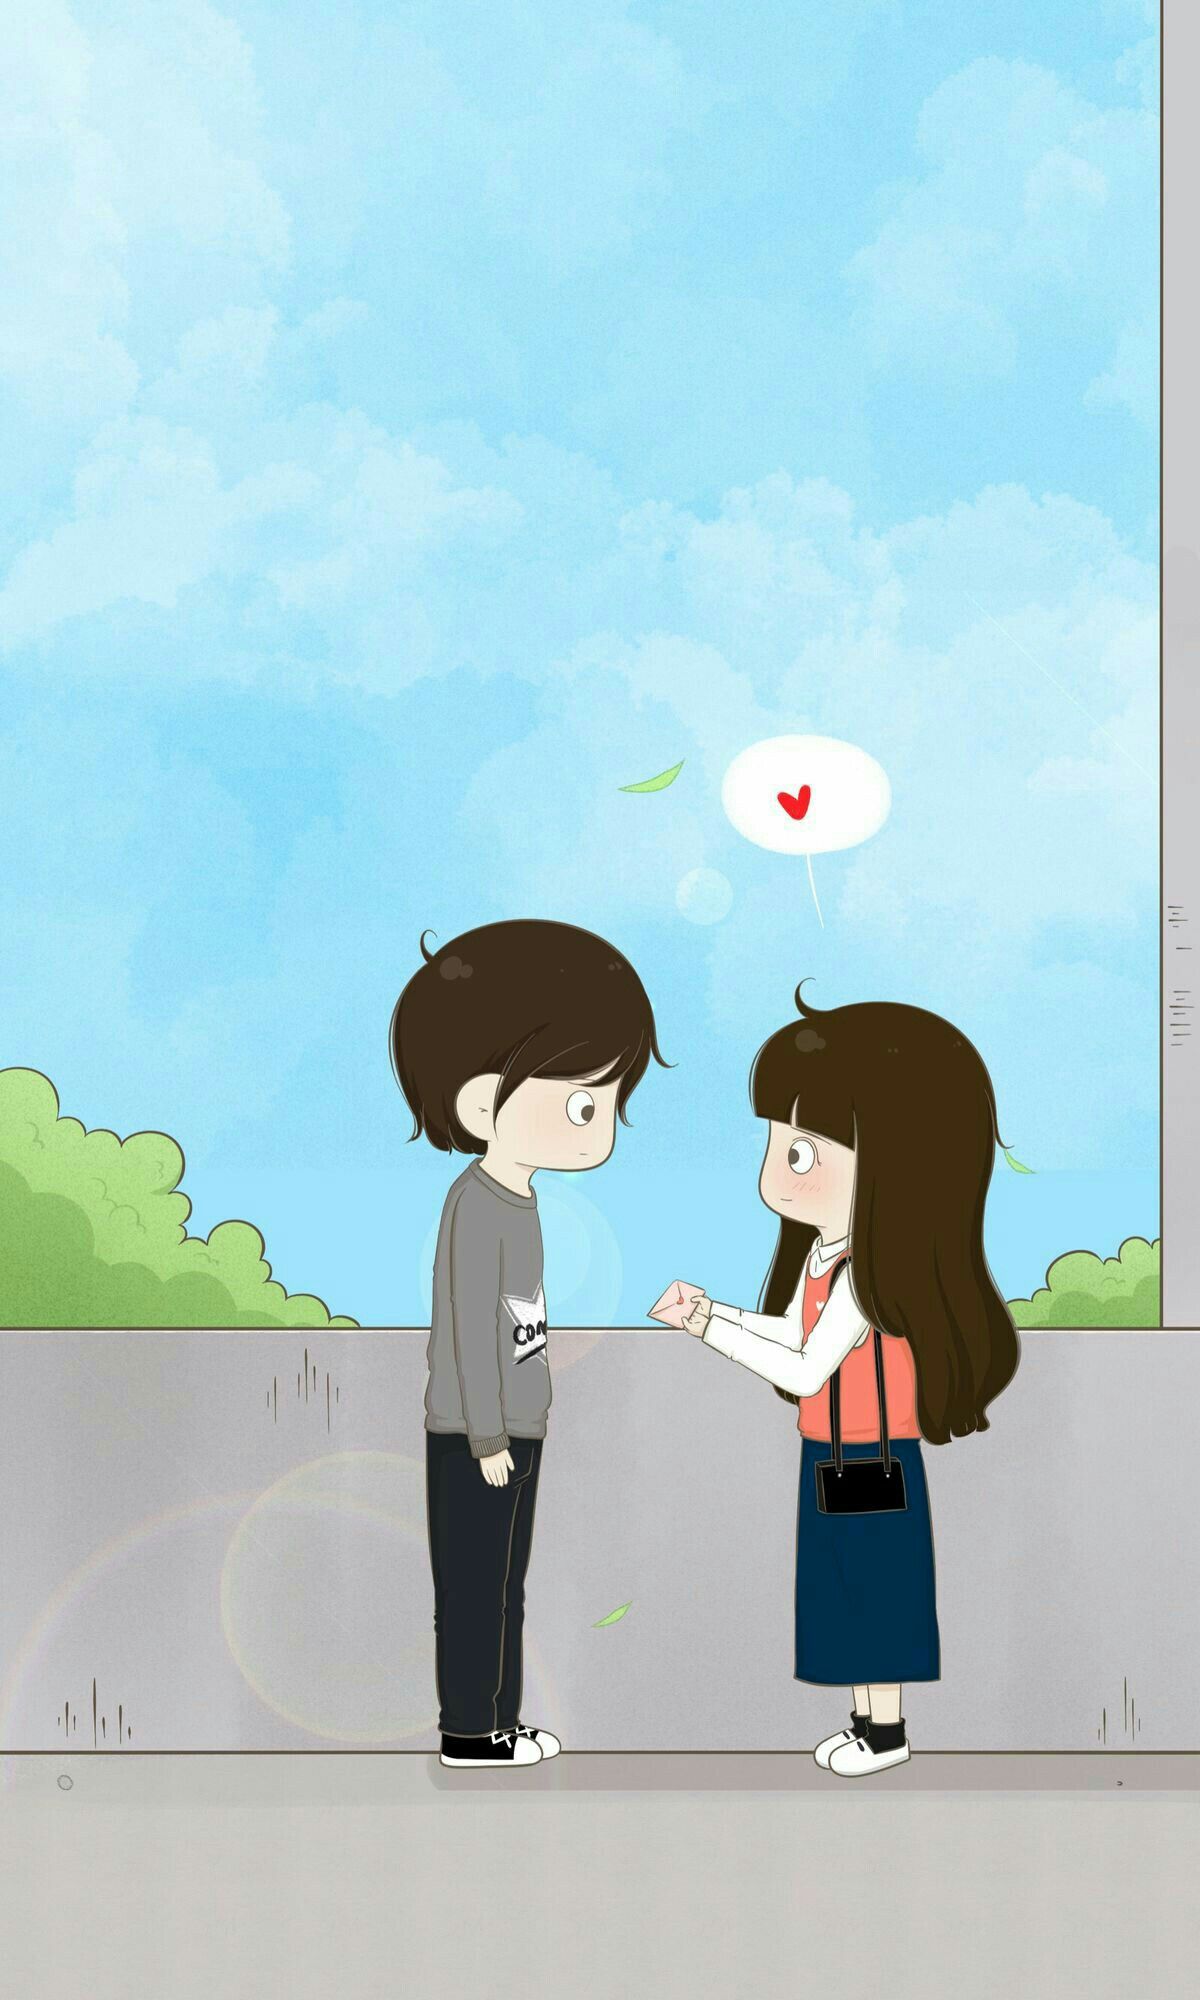 Girlfriend Cartoon Pictures Wallpapers